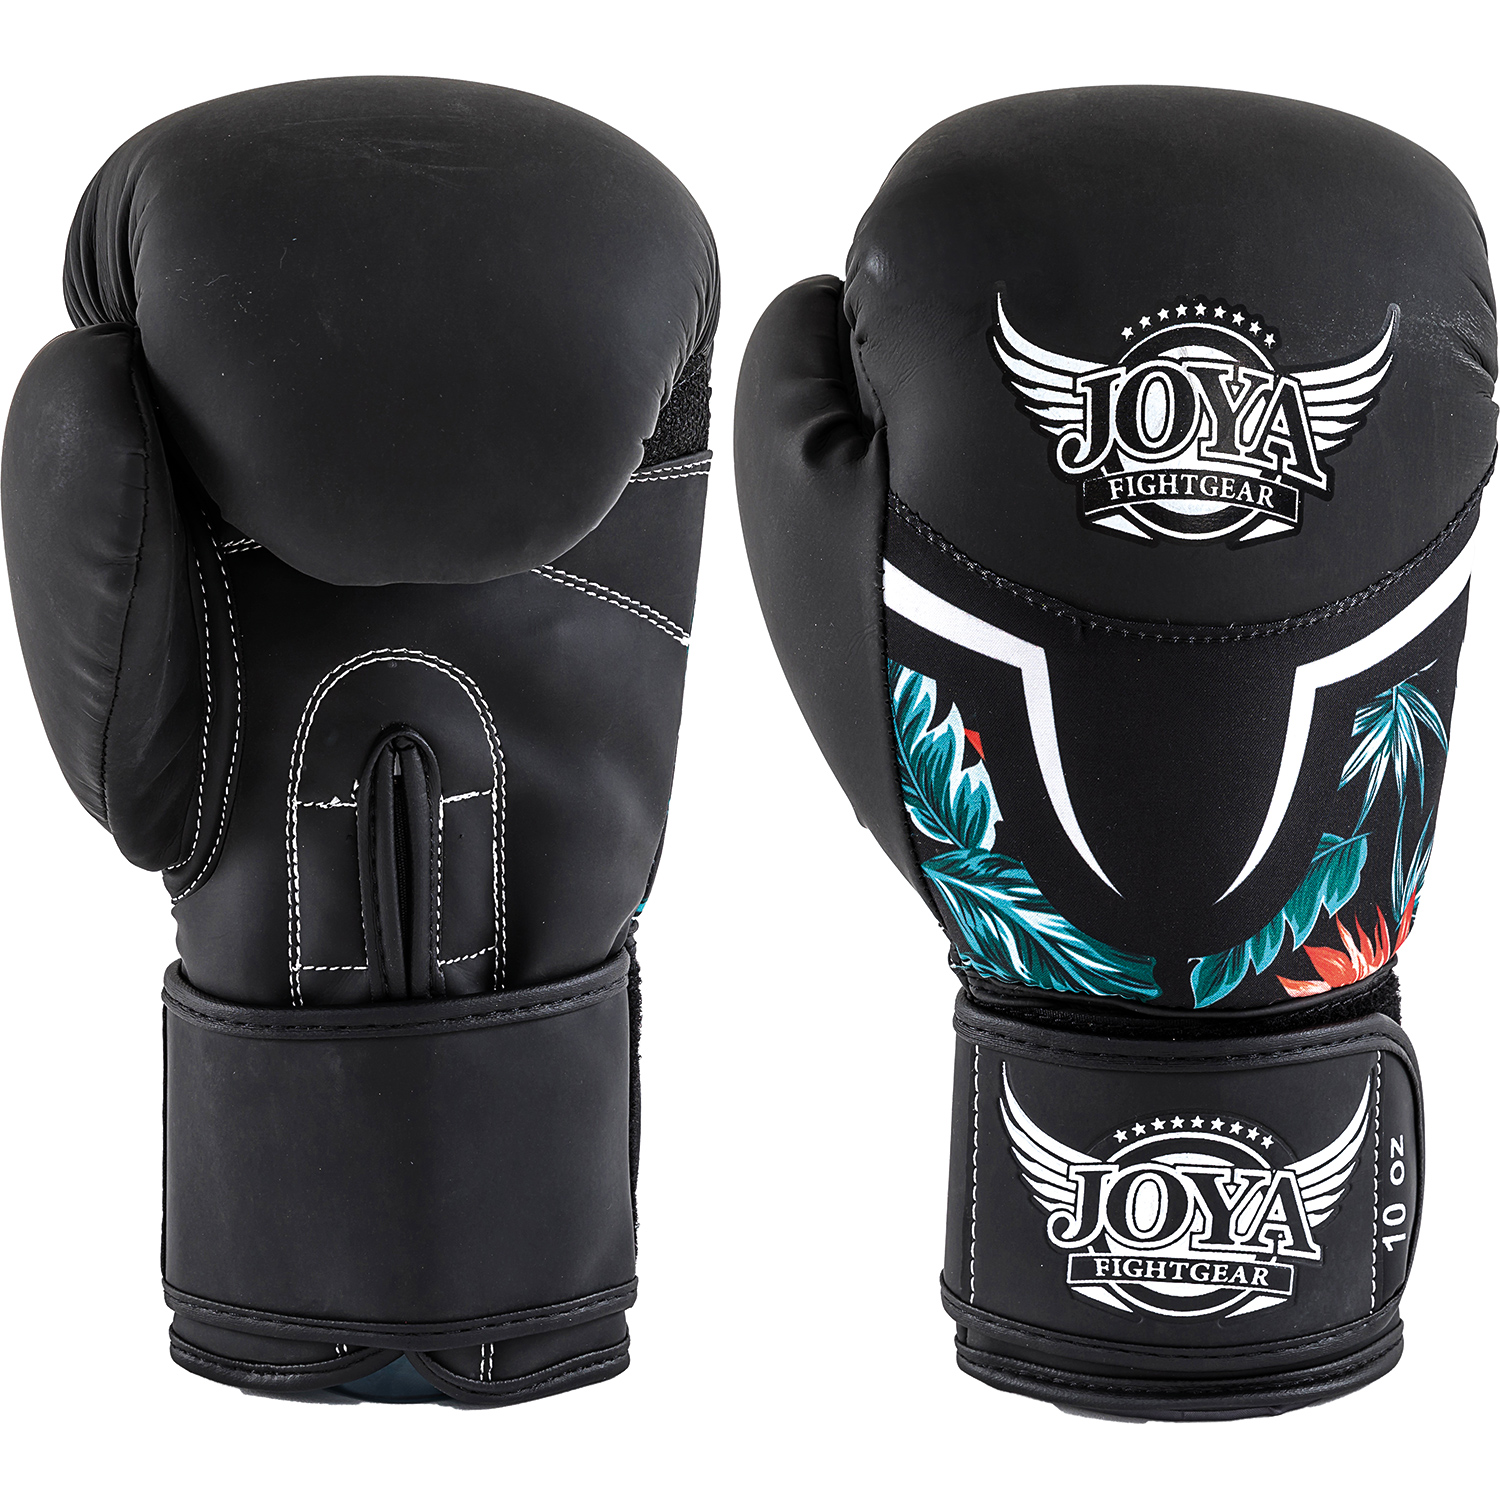 Joya Tropical boxing glove 12 oz